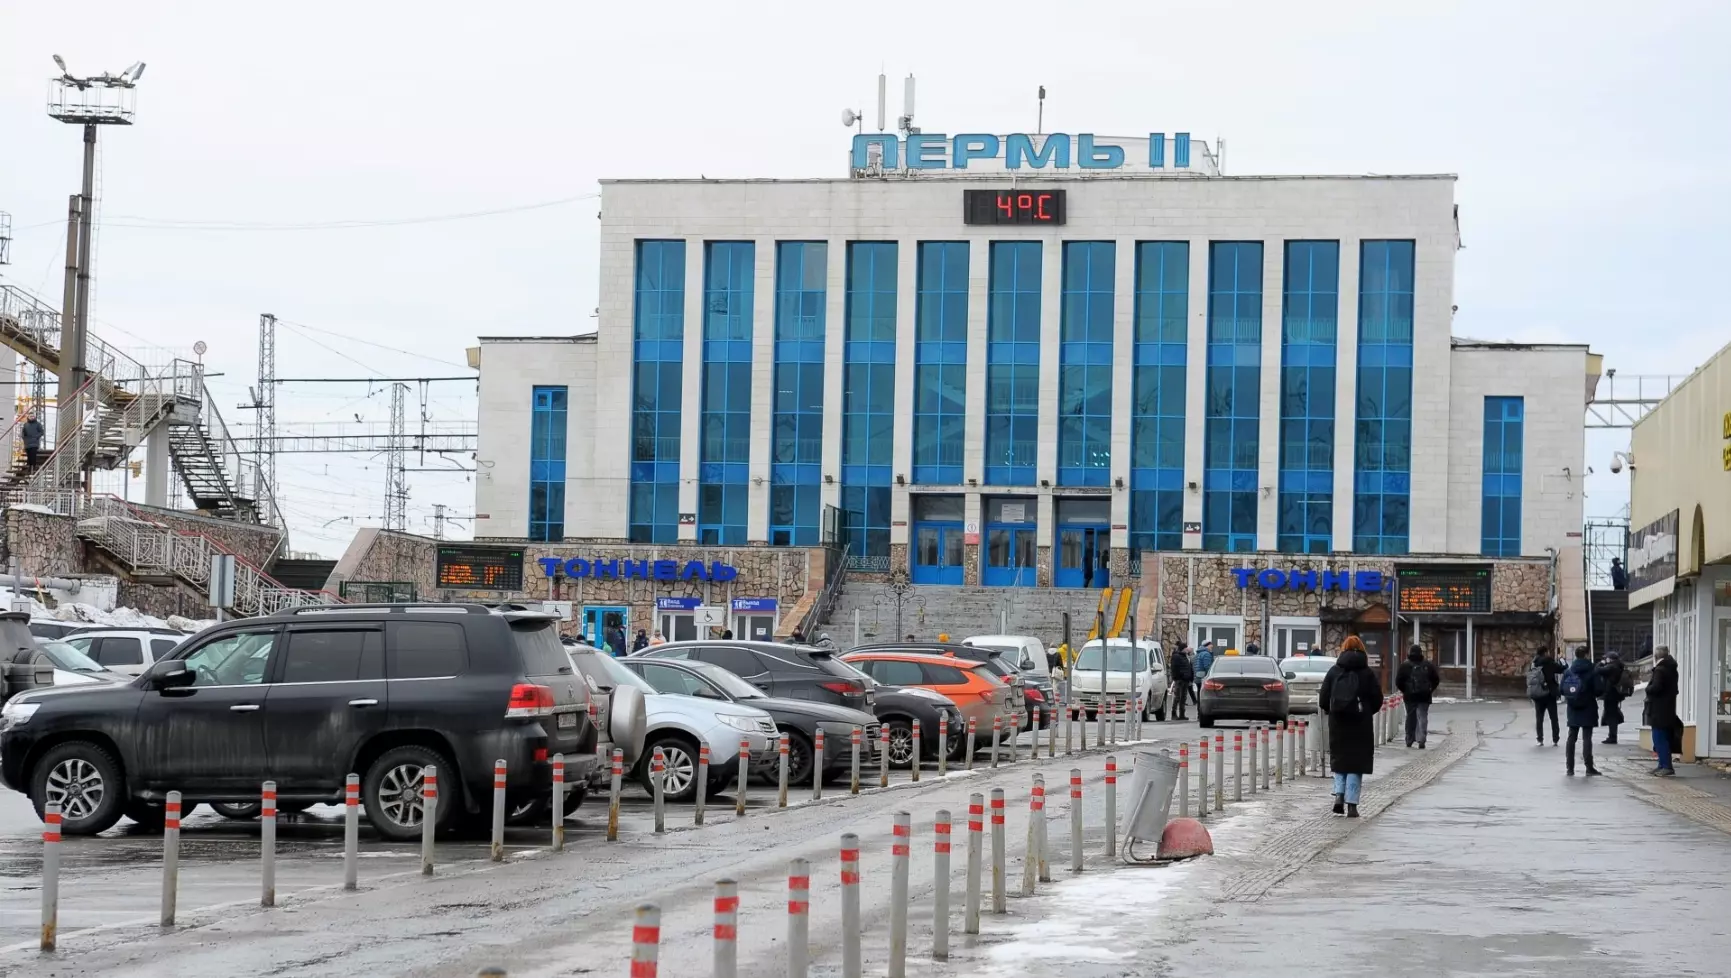 С 1 октября изменятся условия бесплатного проезда на парковку у вокзала Пермь II